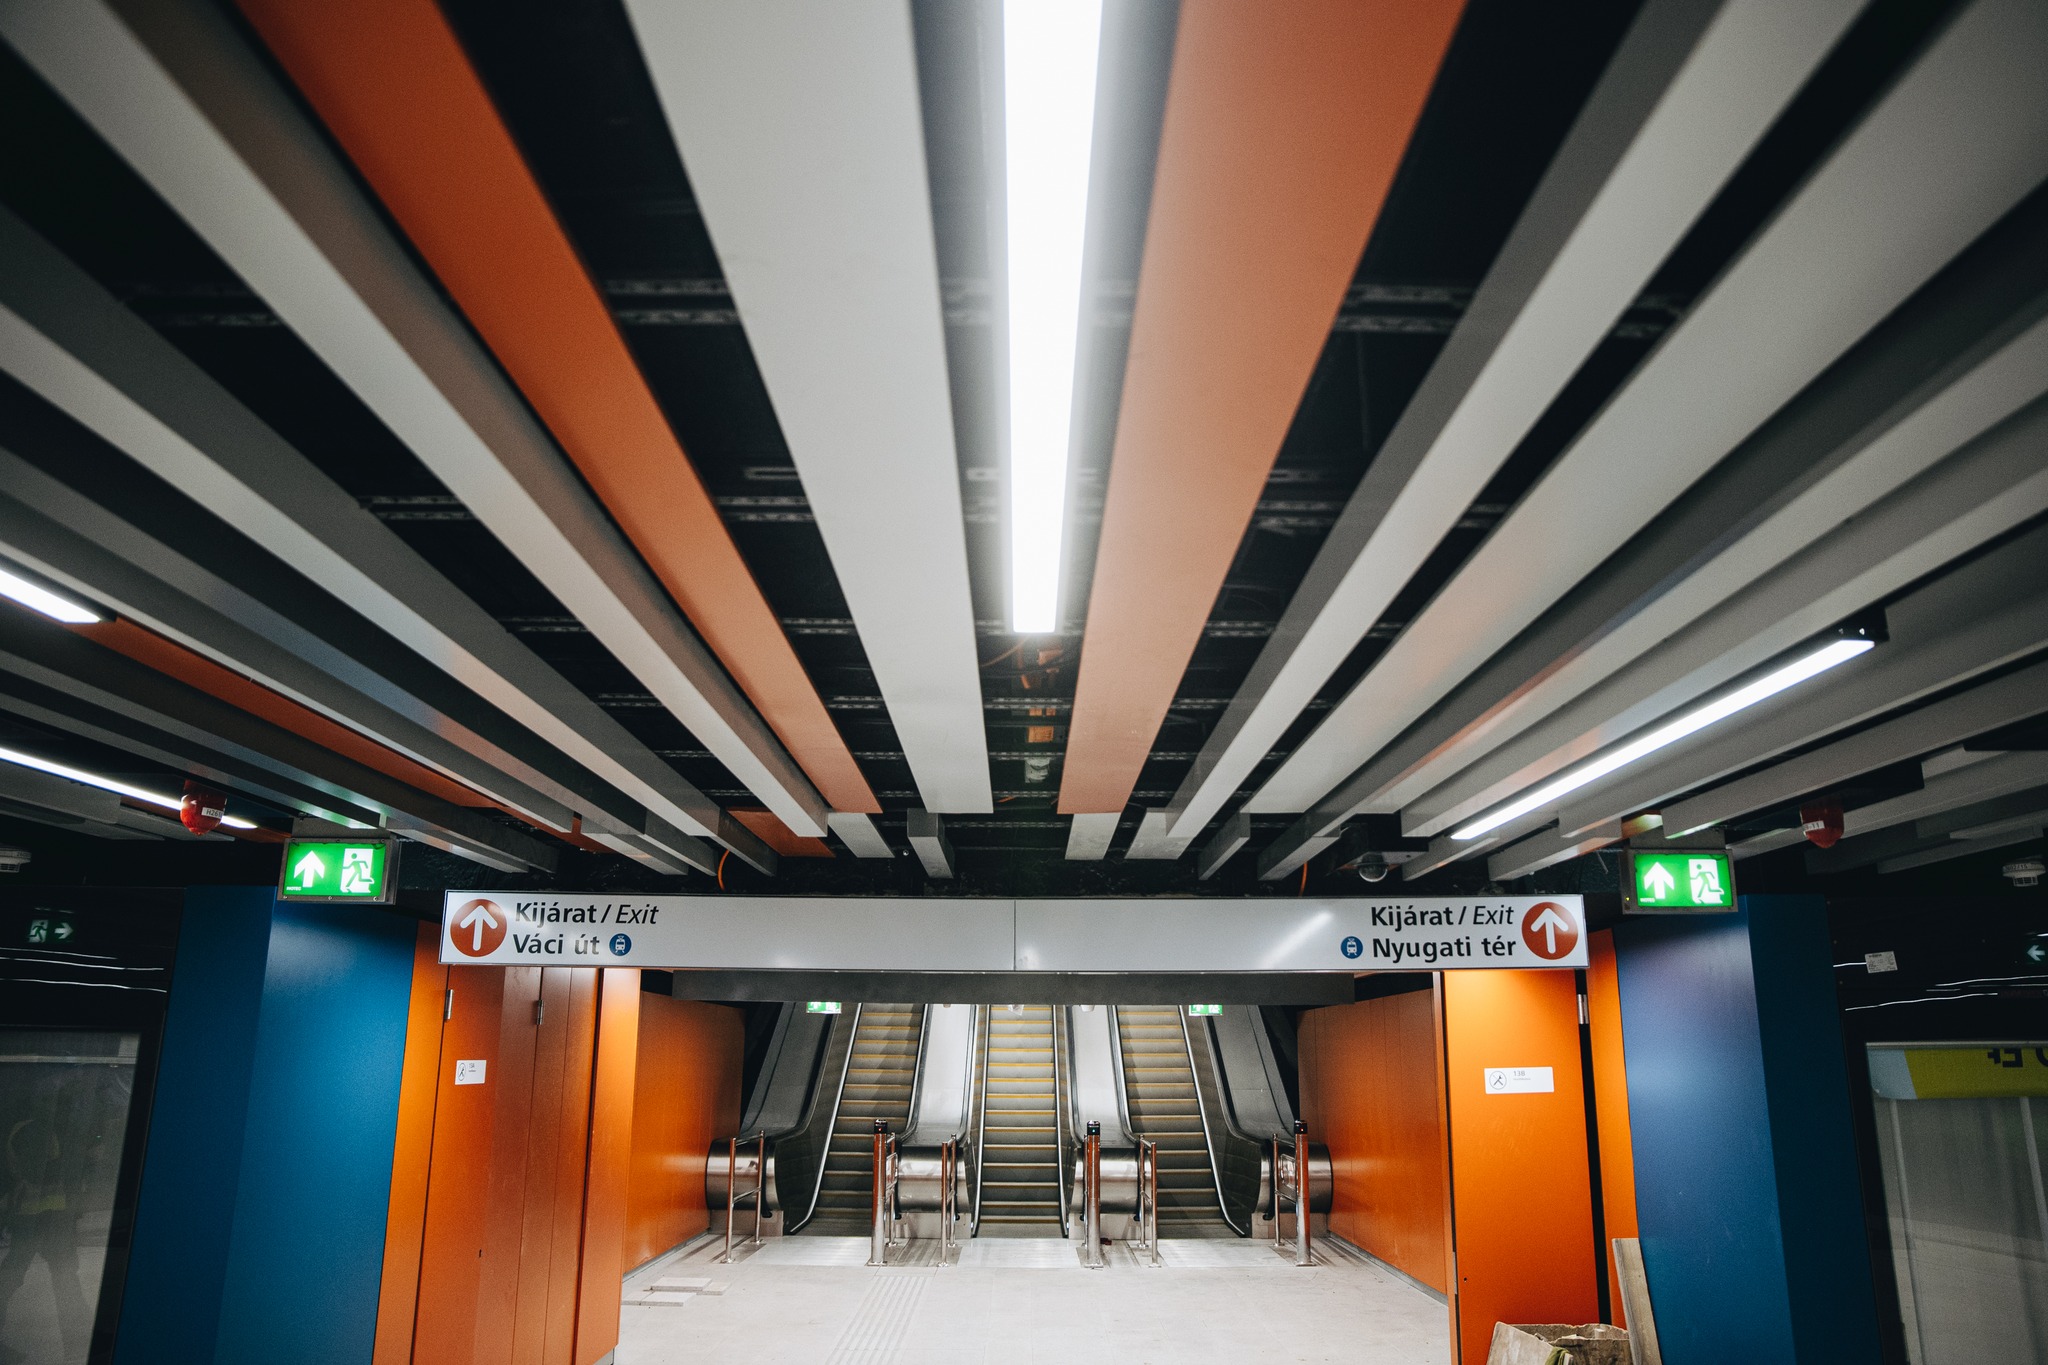 Karácsony Gergely megmutatta, hogy néz ki a felújított Nyugati téri metrómegálló, amit hamarosan átadnak